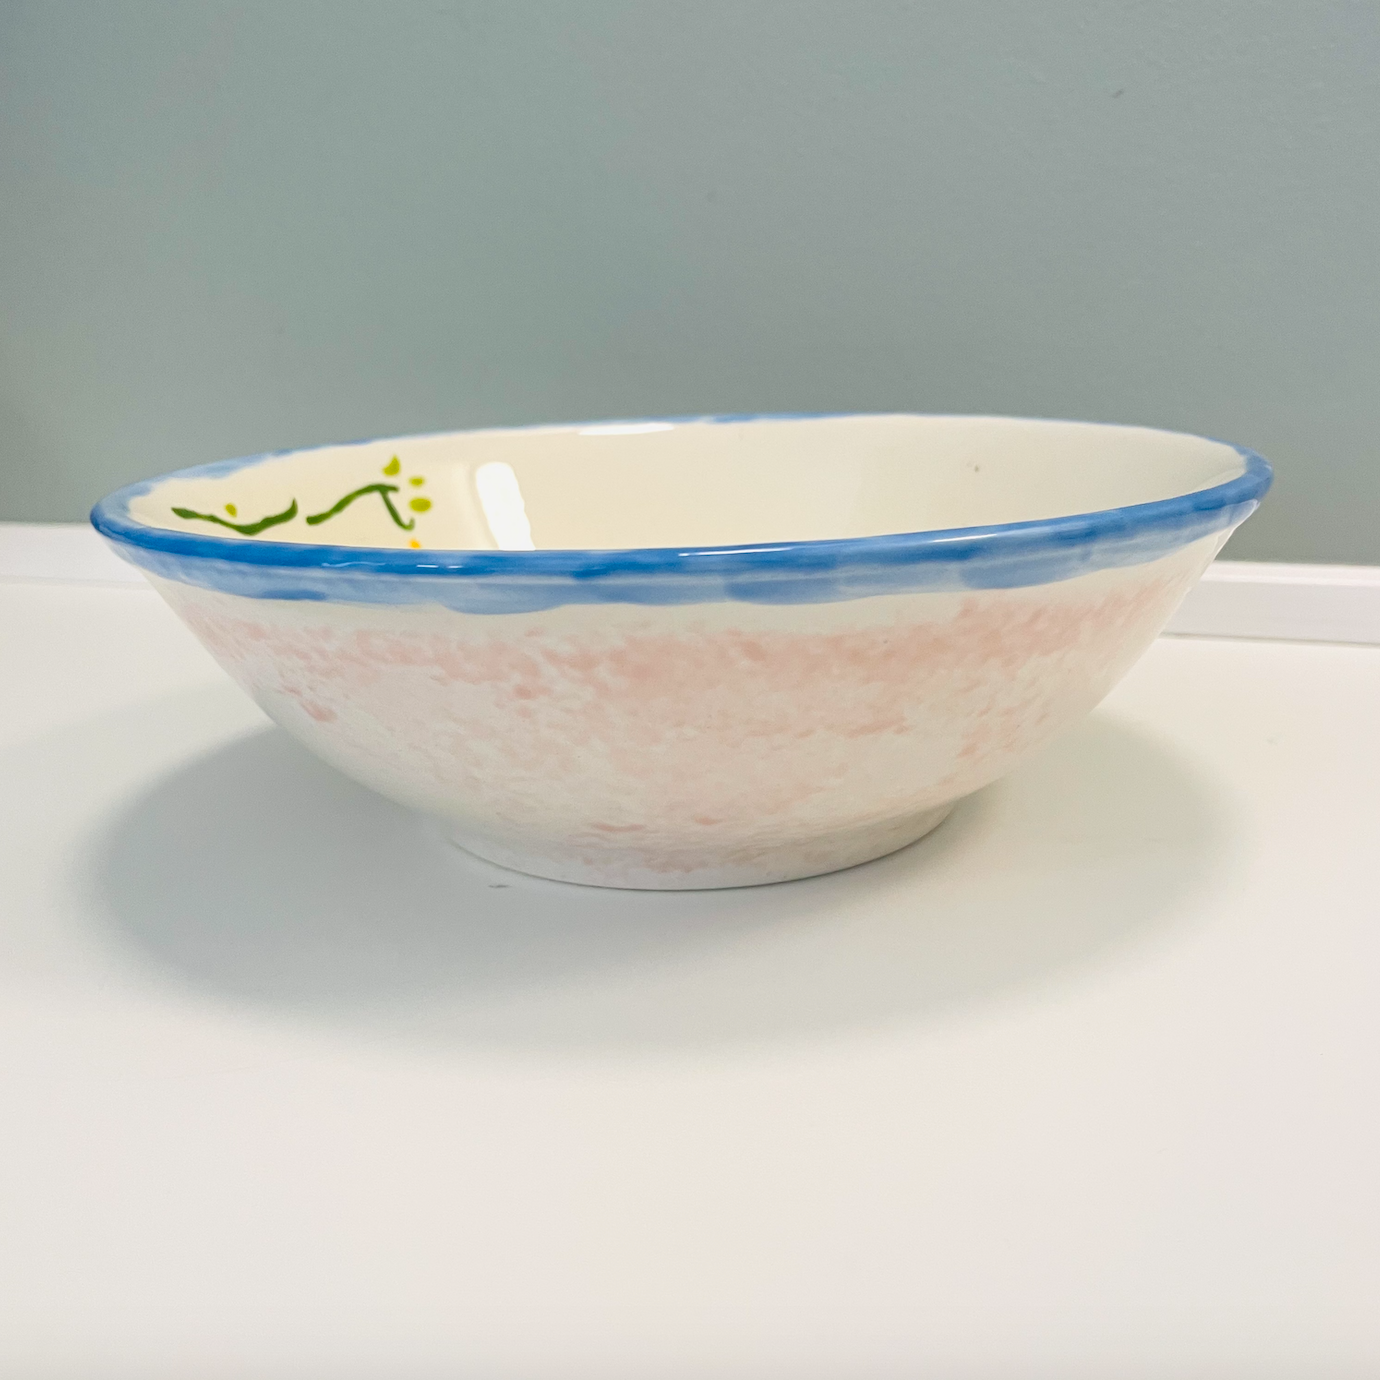 Unique hand painted salad bowl